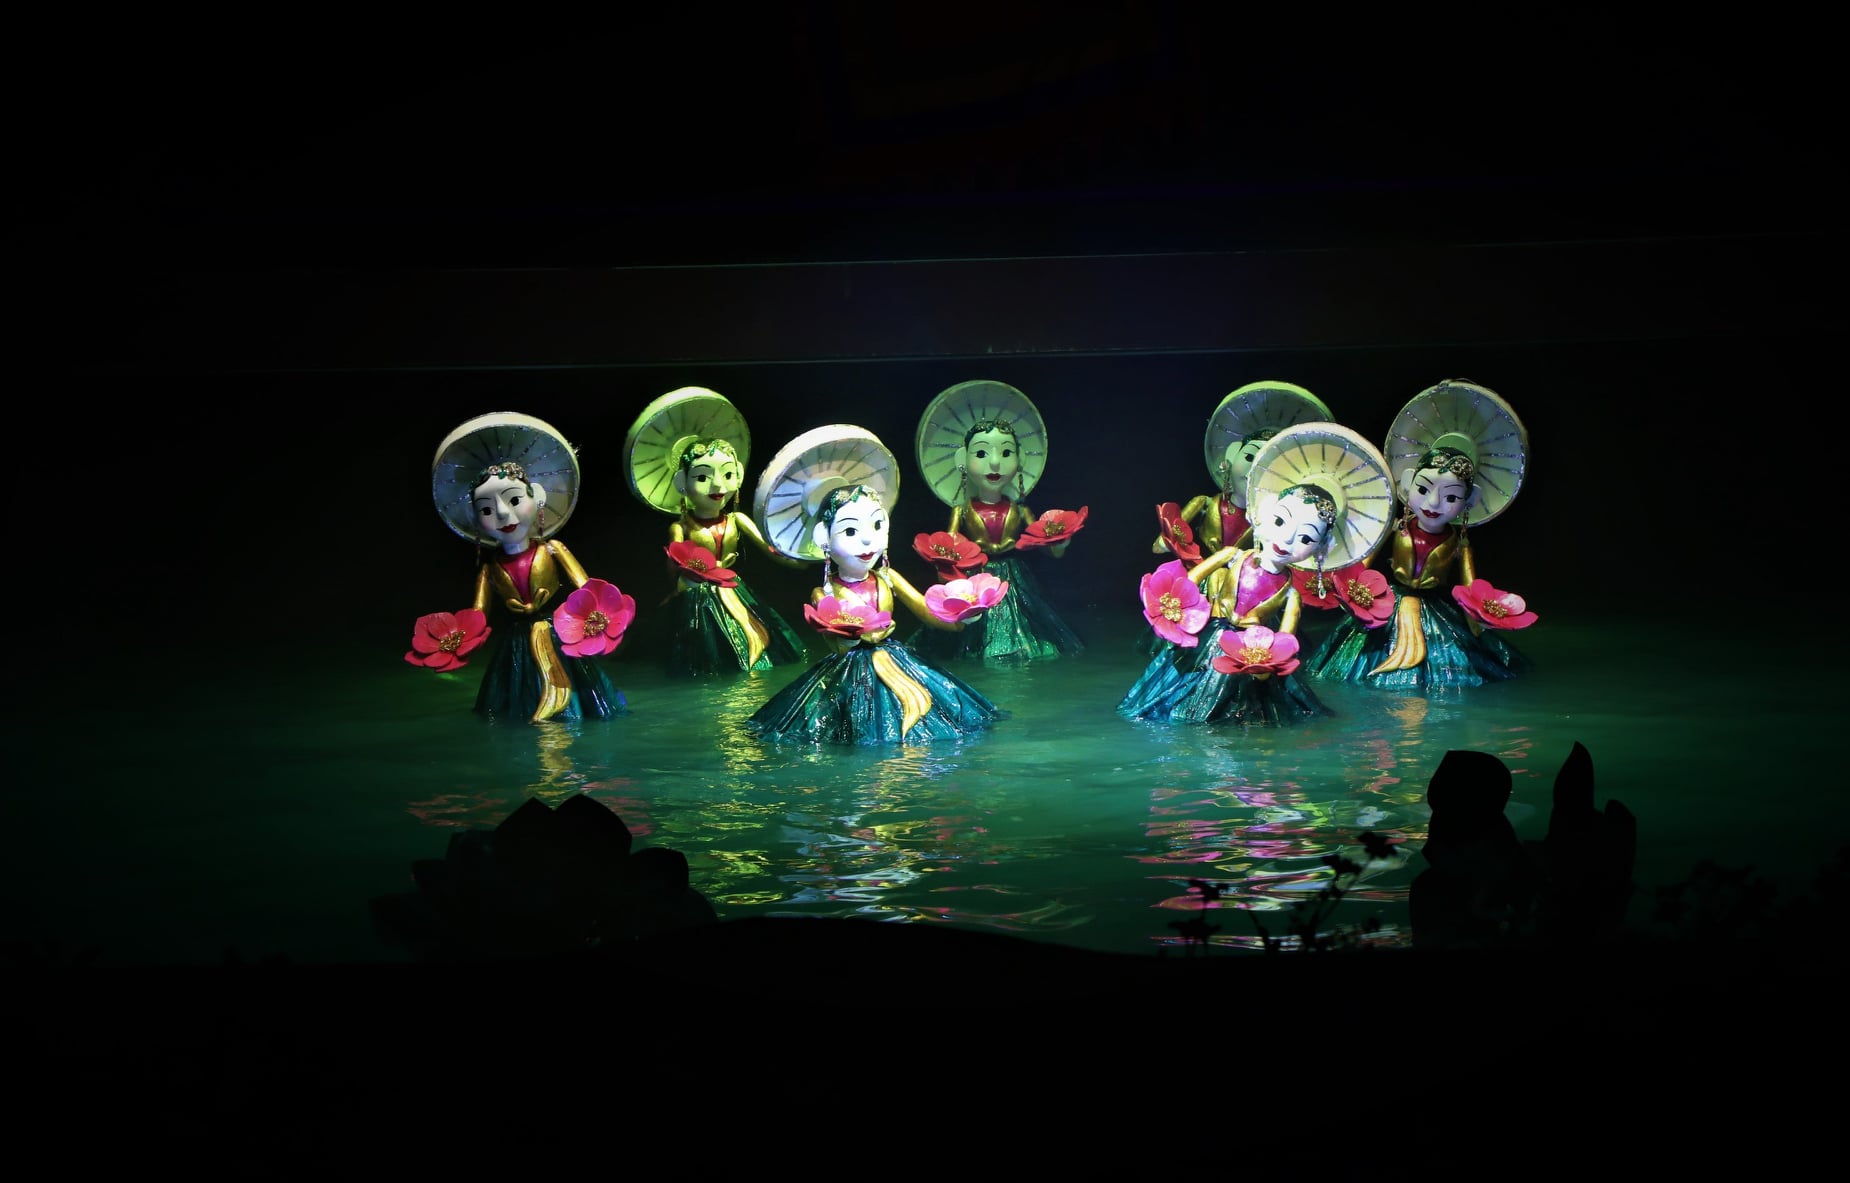 Bàn về hoạt động biểu diễn nghệ thuật truyền thống phục vụ phát triển du lịch tại Thành phố Hà Nội hiện nay - 2